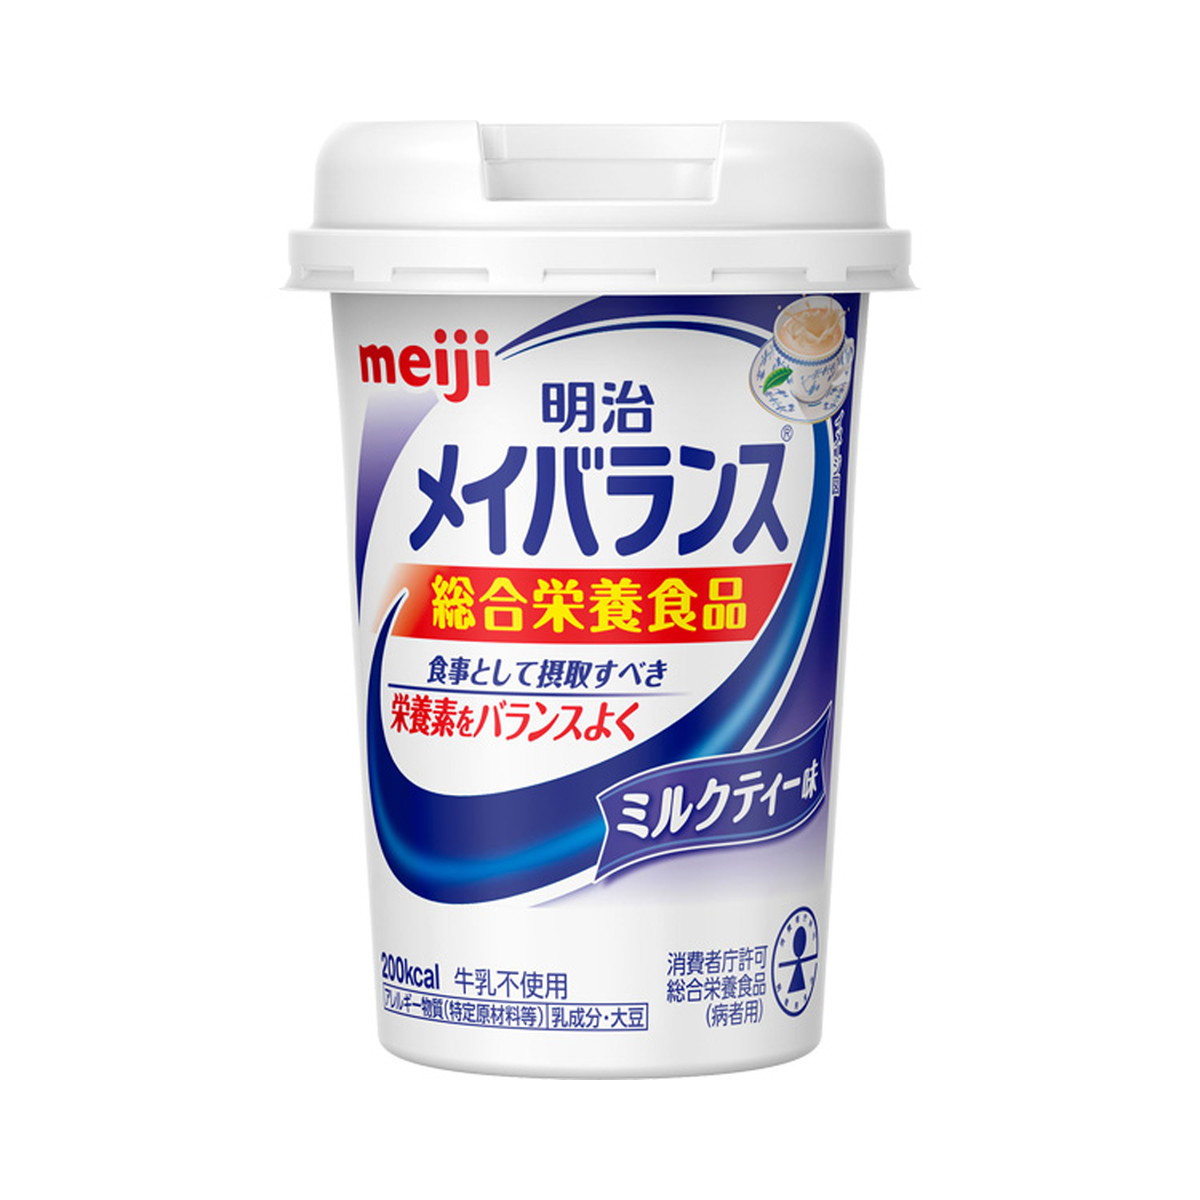 明治 メイバランス Mini カップ ミルクティー味(125ml)  ※軽減税率対象品